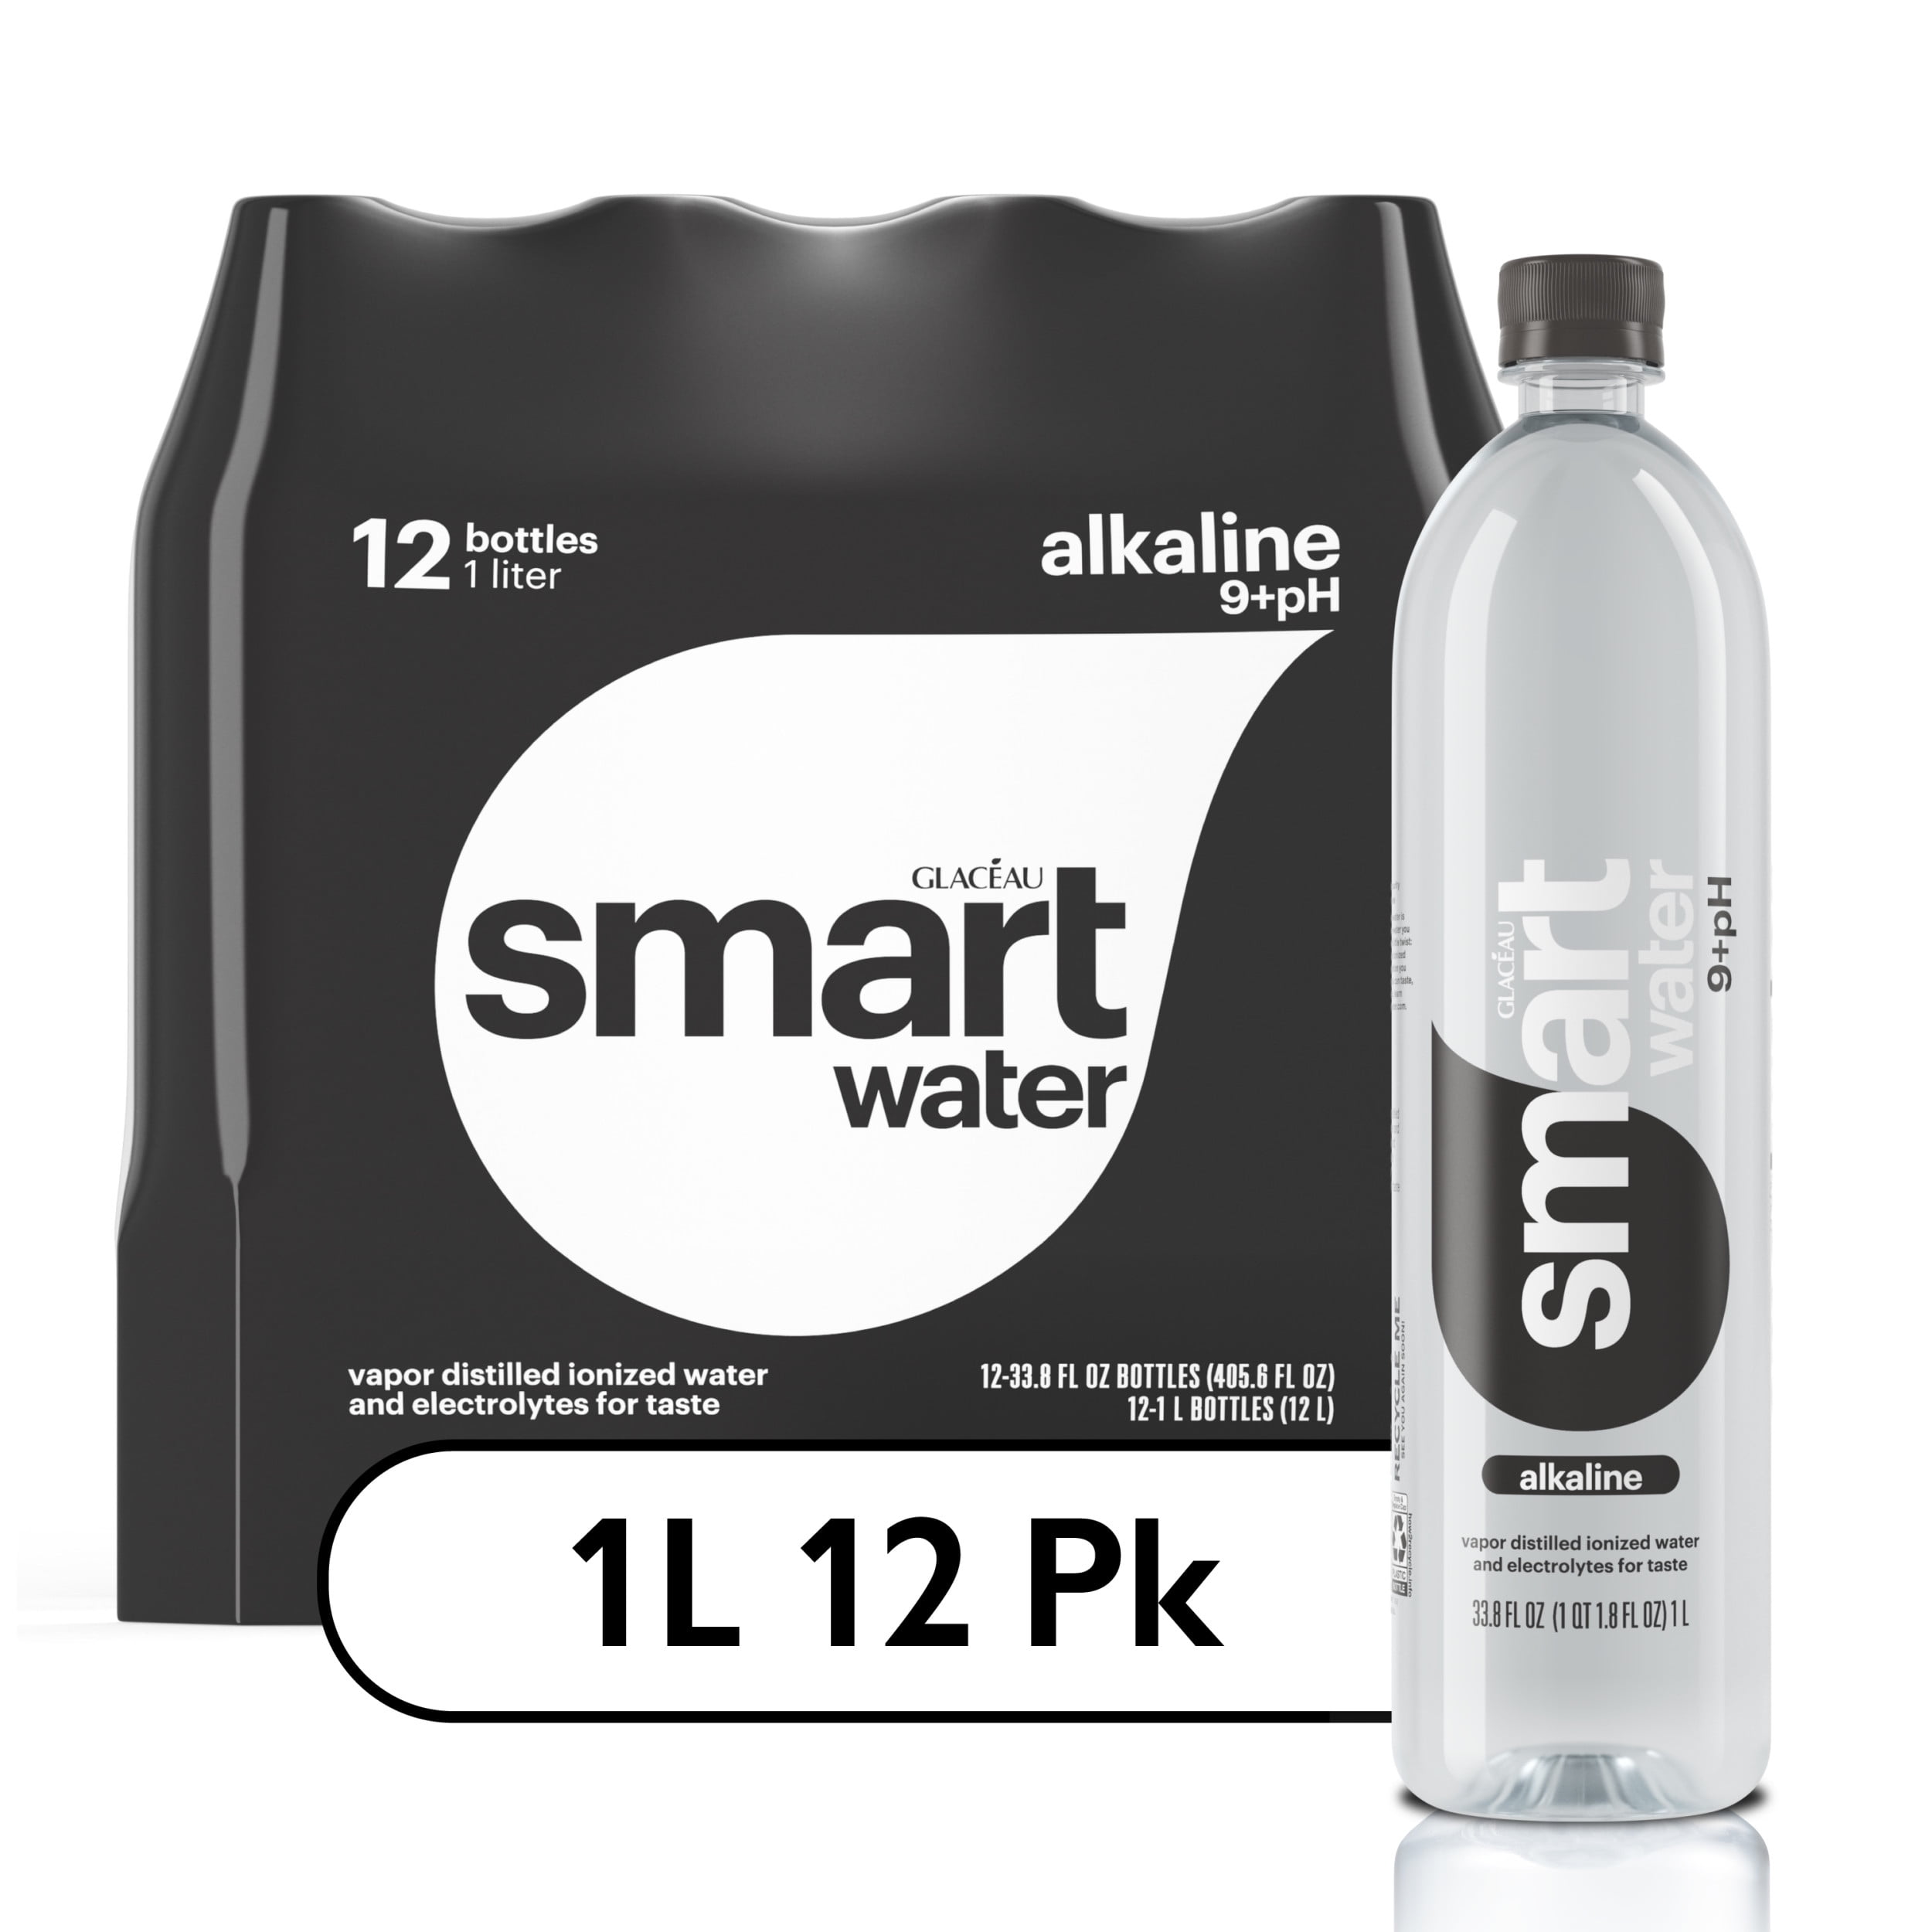 smartwater-alkaline-water-premium-vapor-distilled-enhanced-water